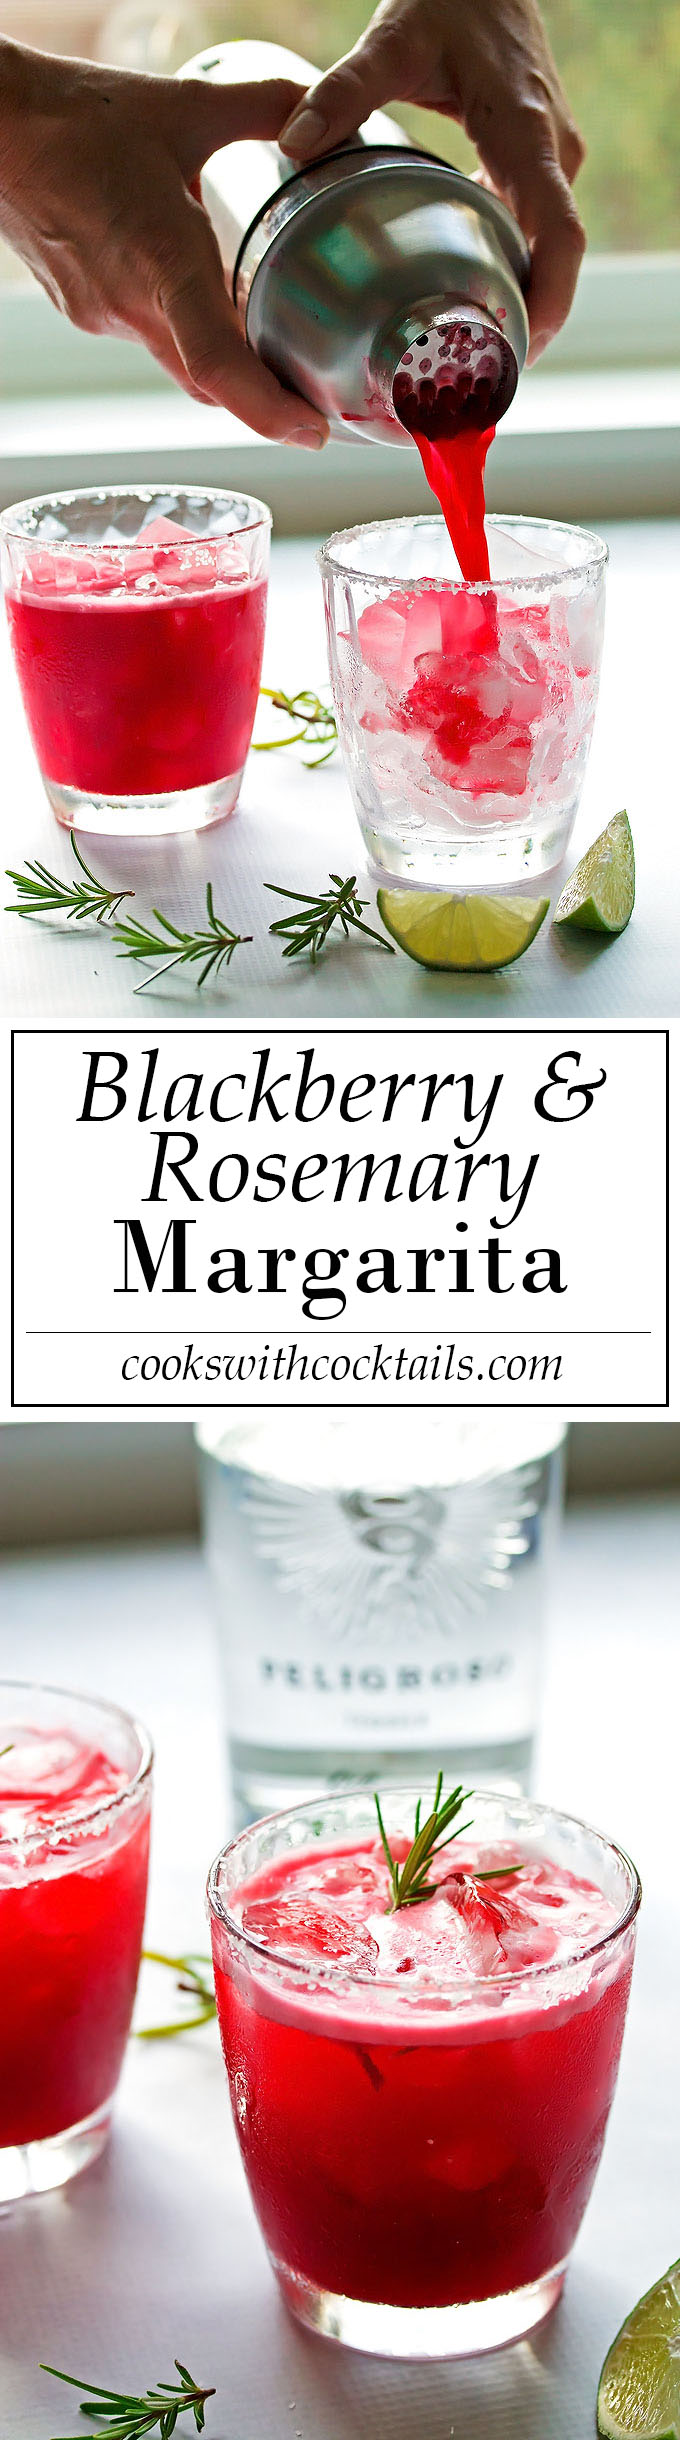 Blackberry & Rosemary Margarita